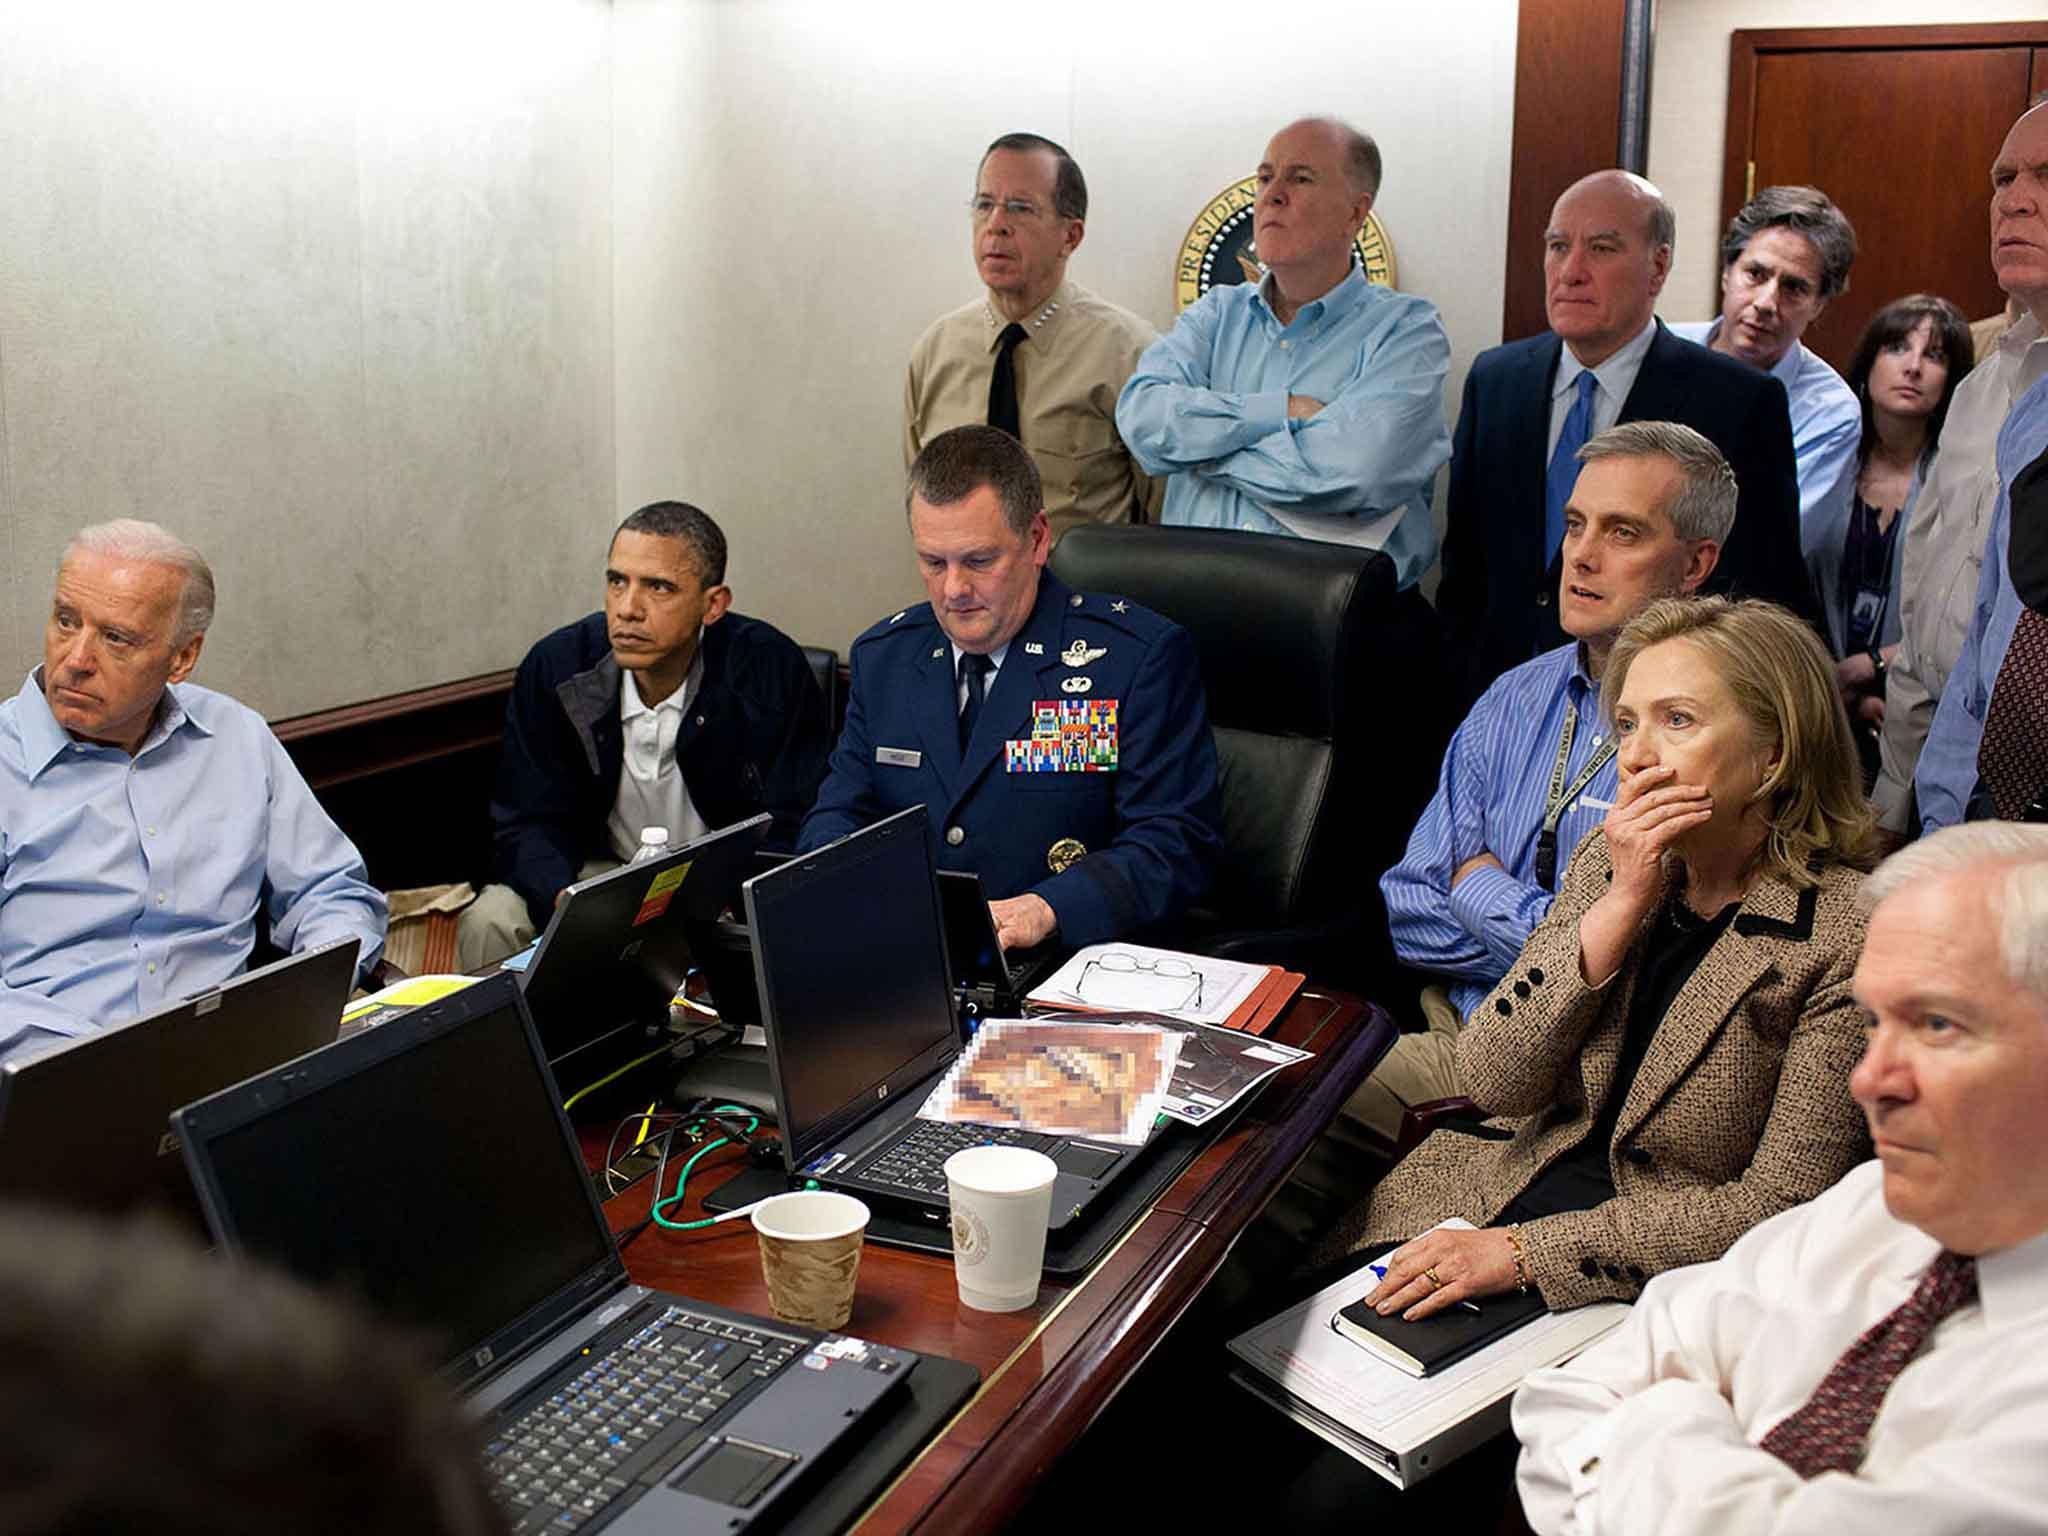 El fotógrafo de la Casa Blanca, Pete Souza, capturó esta icónica imagen del entonces presidente Barack Obama y sus asesores monitoreando la misión del Navy SEAL Team 6 para capturar o matar a Osama bin Laden